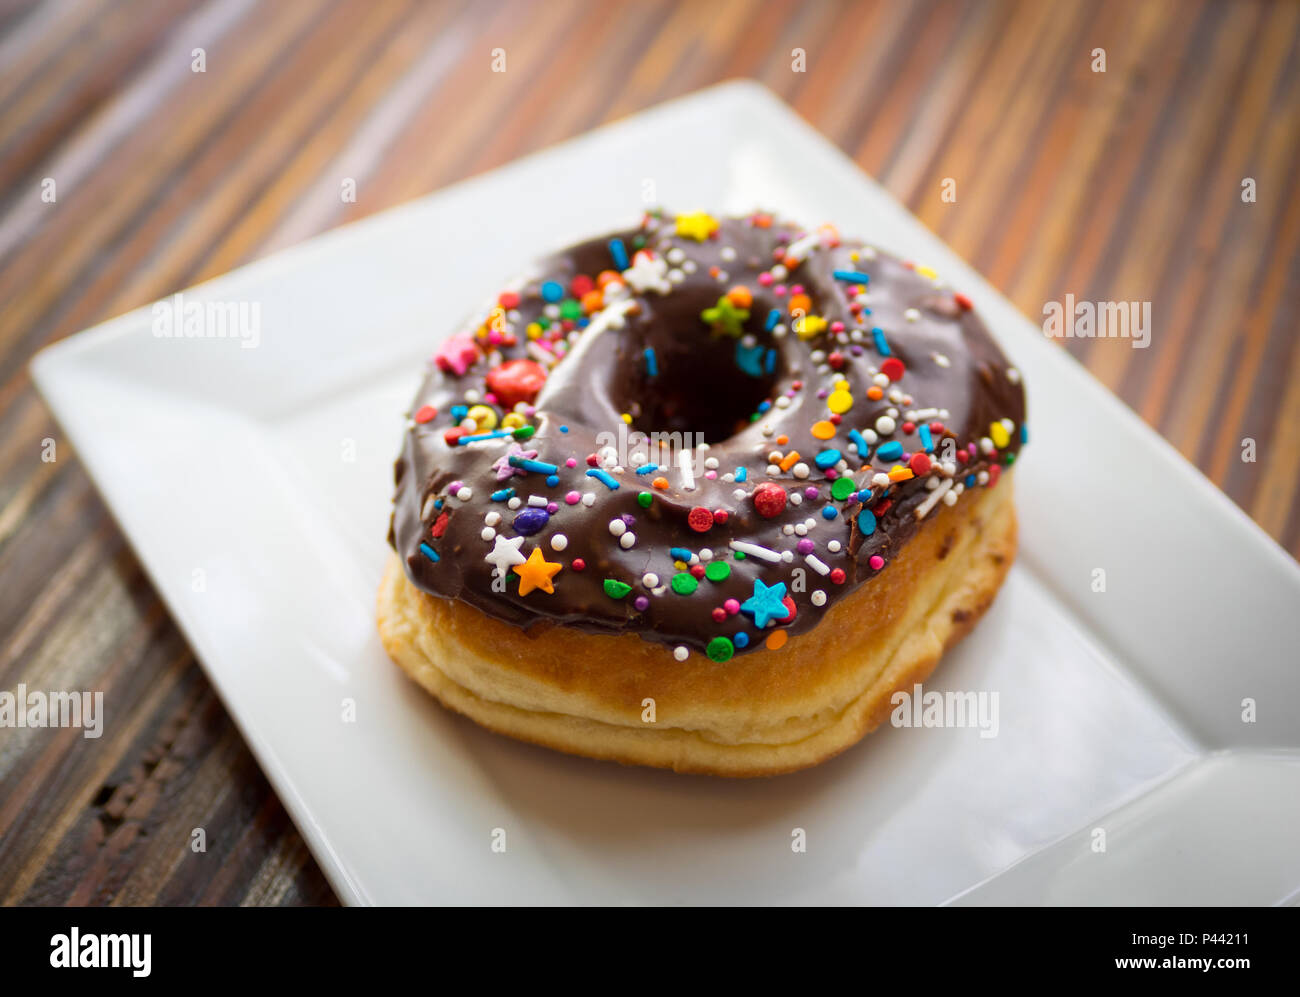 Un donut de chocolate con tropezones de picnic, una popular cafetería y restaurante en Victoria, British Columbia, Canadá. Foto de stock